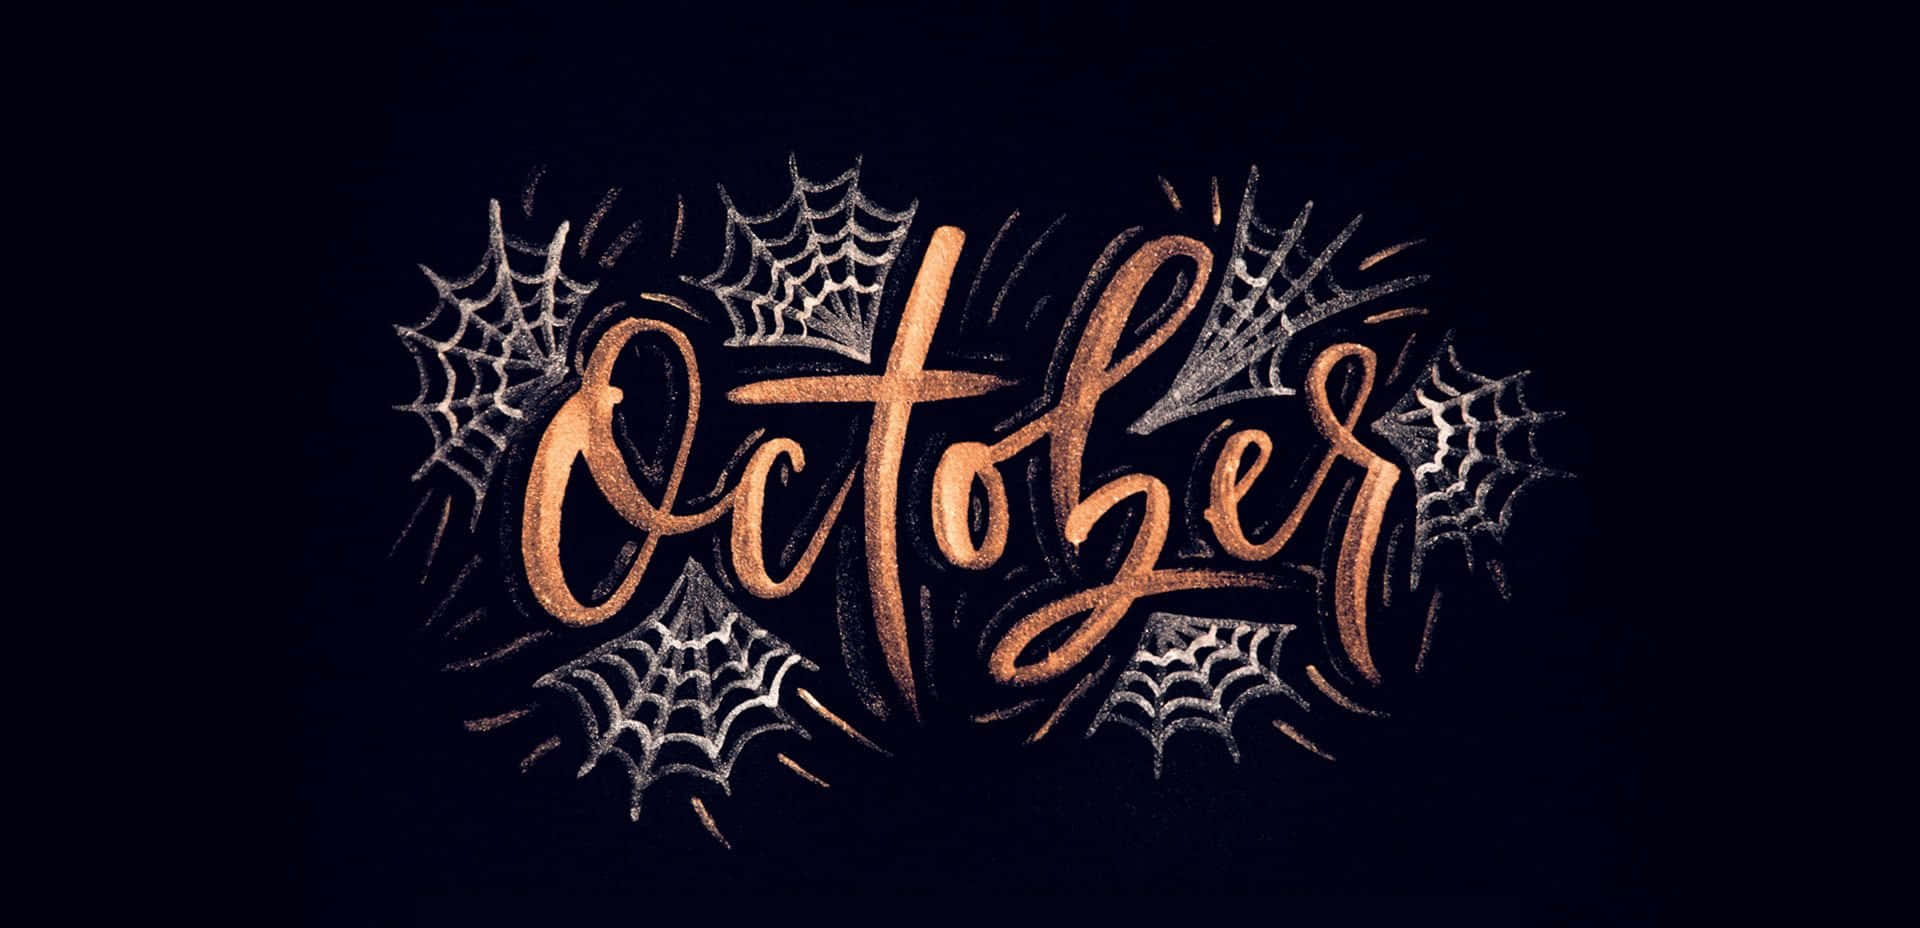 October Aesthetic Black Widescreen Wallpaper